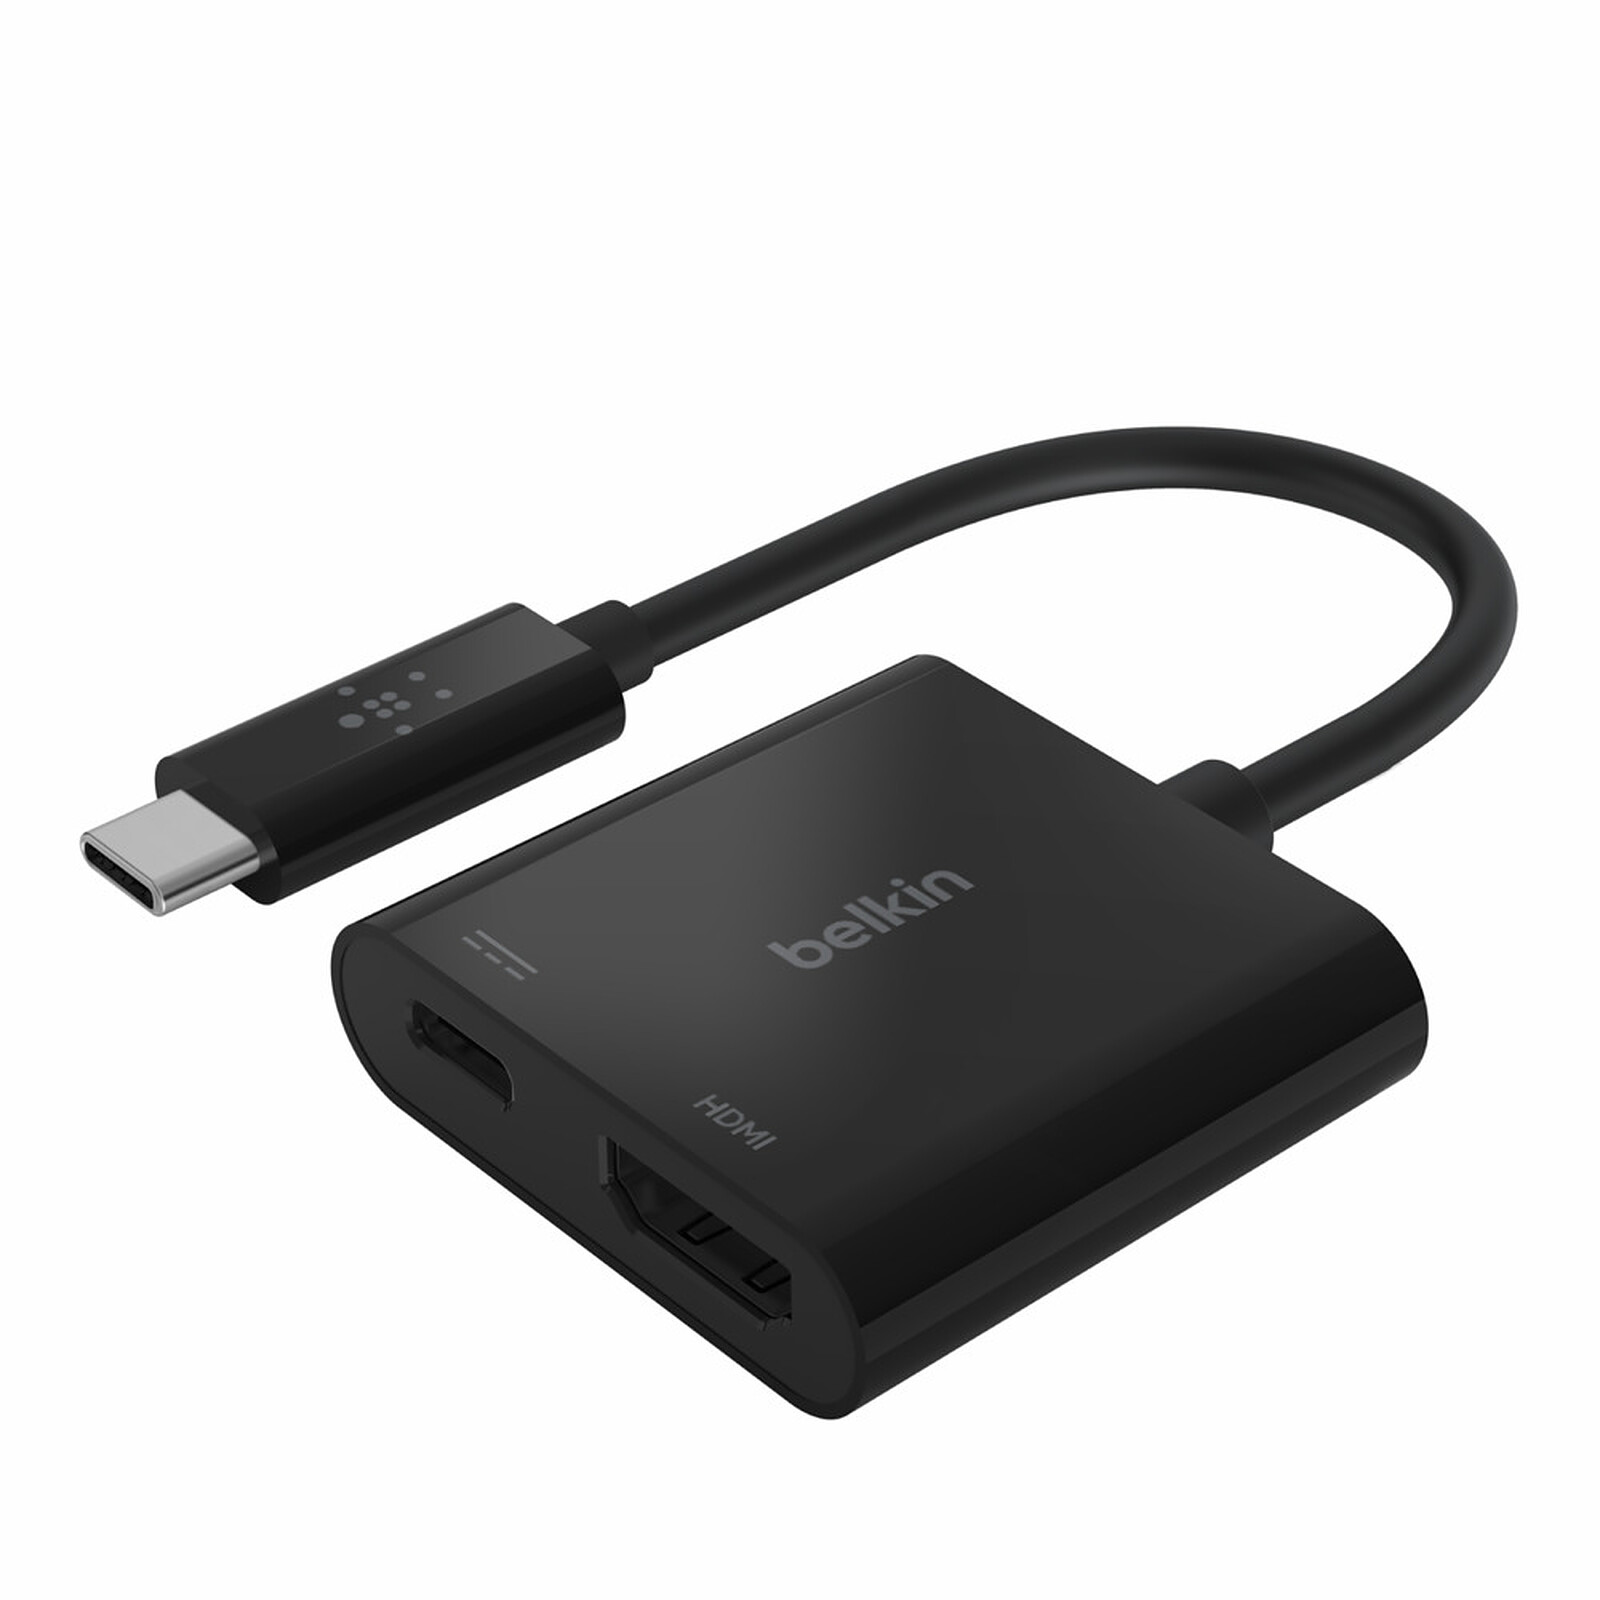 Belkin Adaptateur USB-C vers HDMI + recharge - USB - Garantie 3